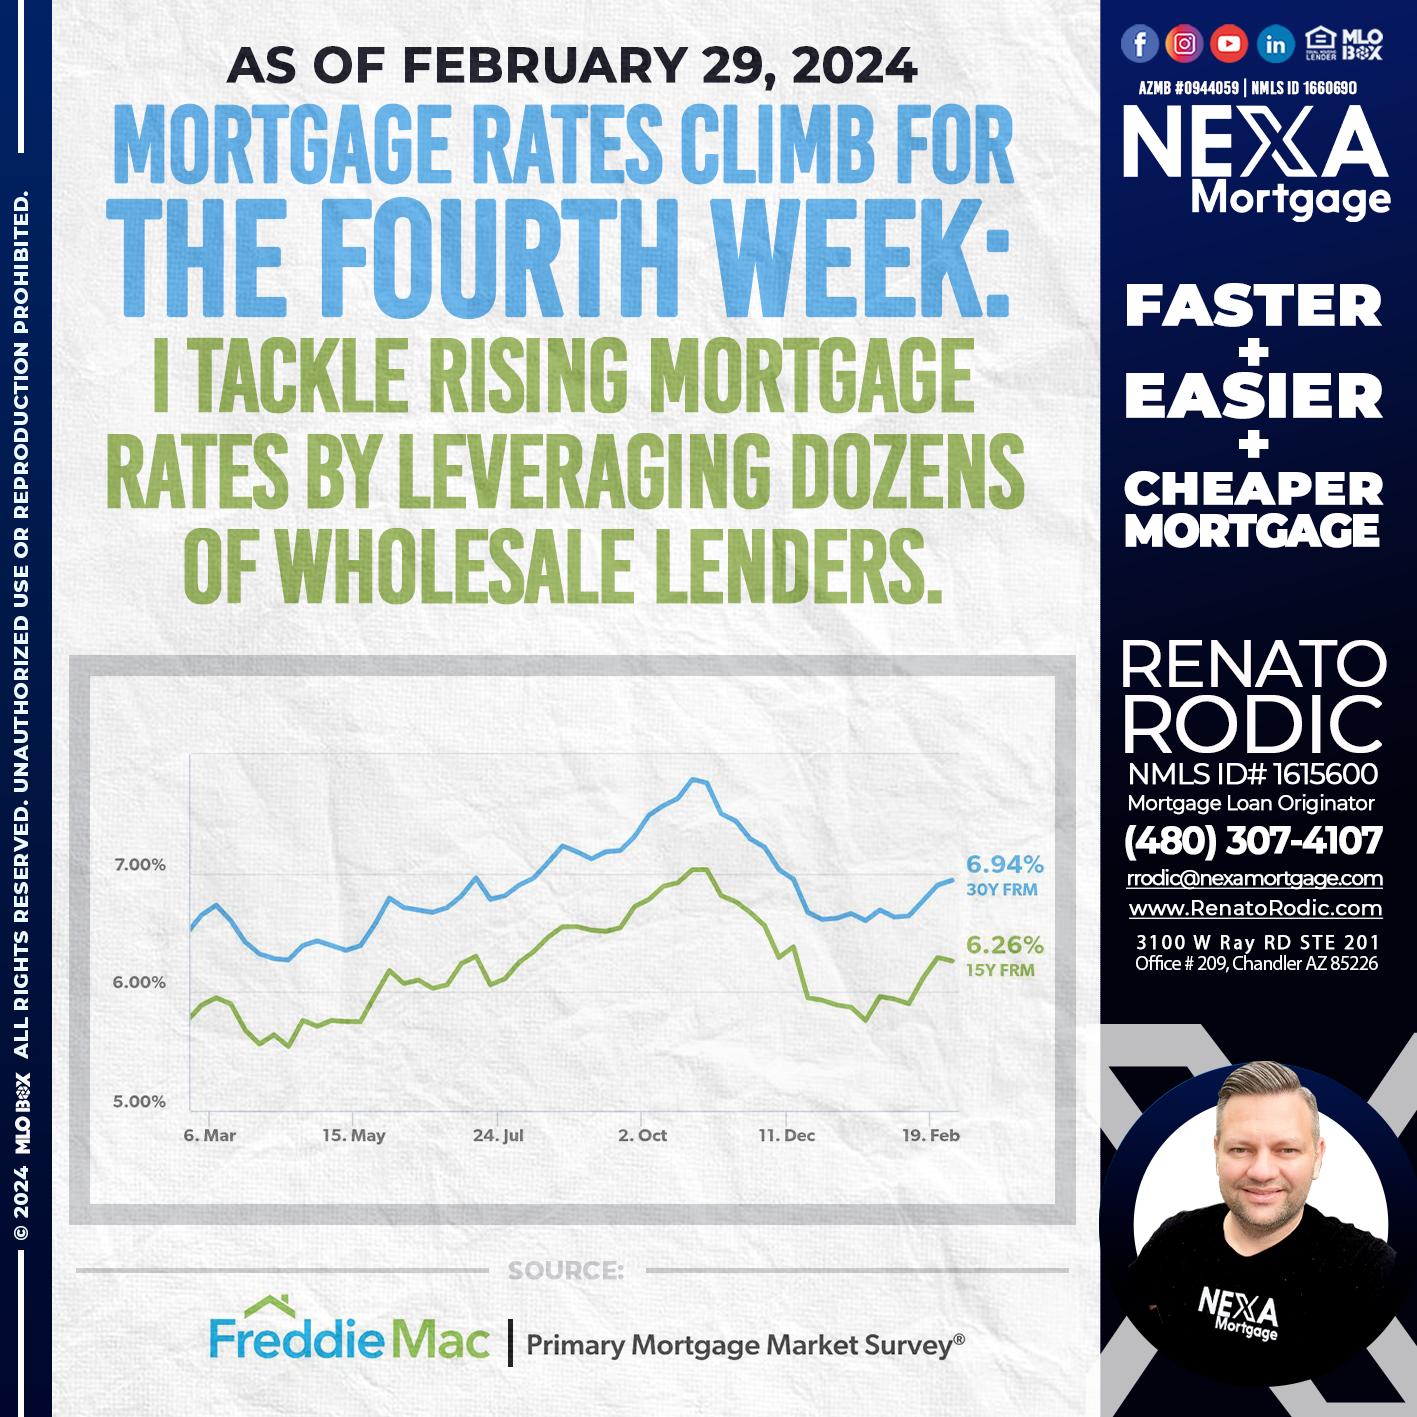 feb 29 - Renato Rodic -Mortgage Loan Originator